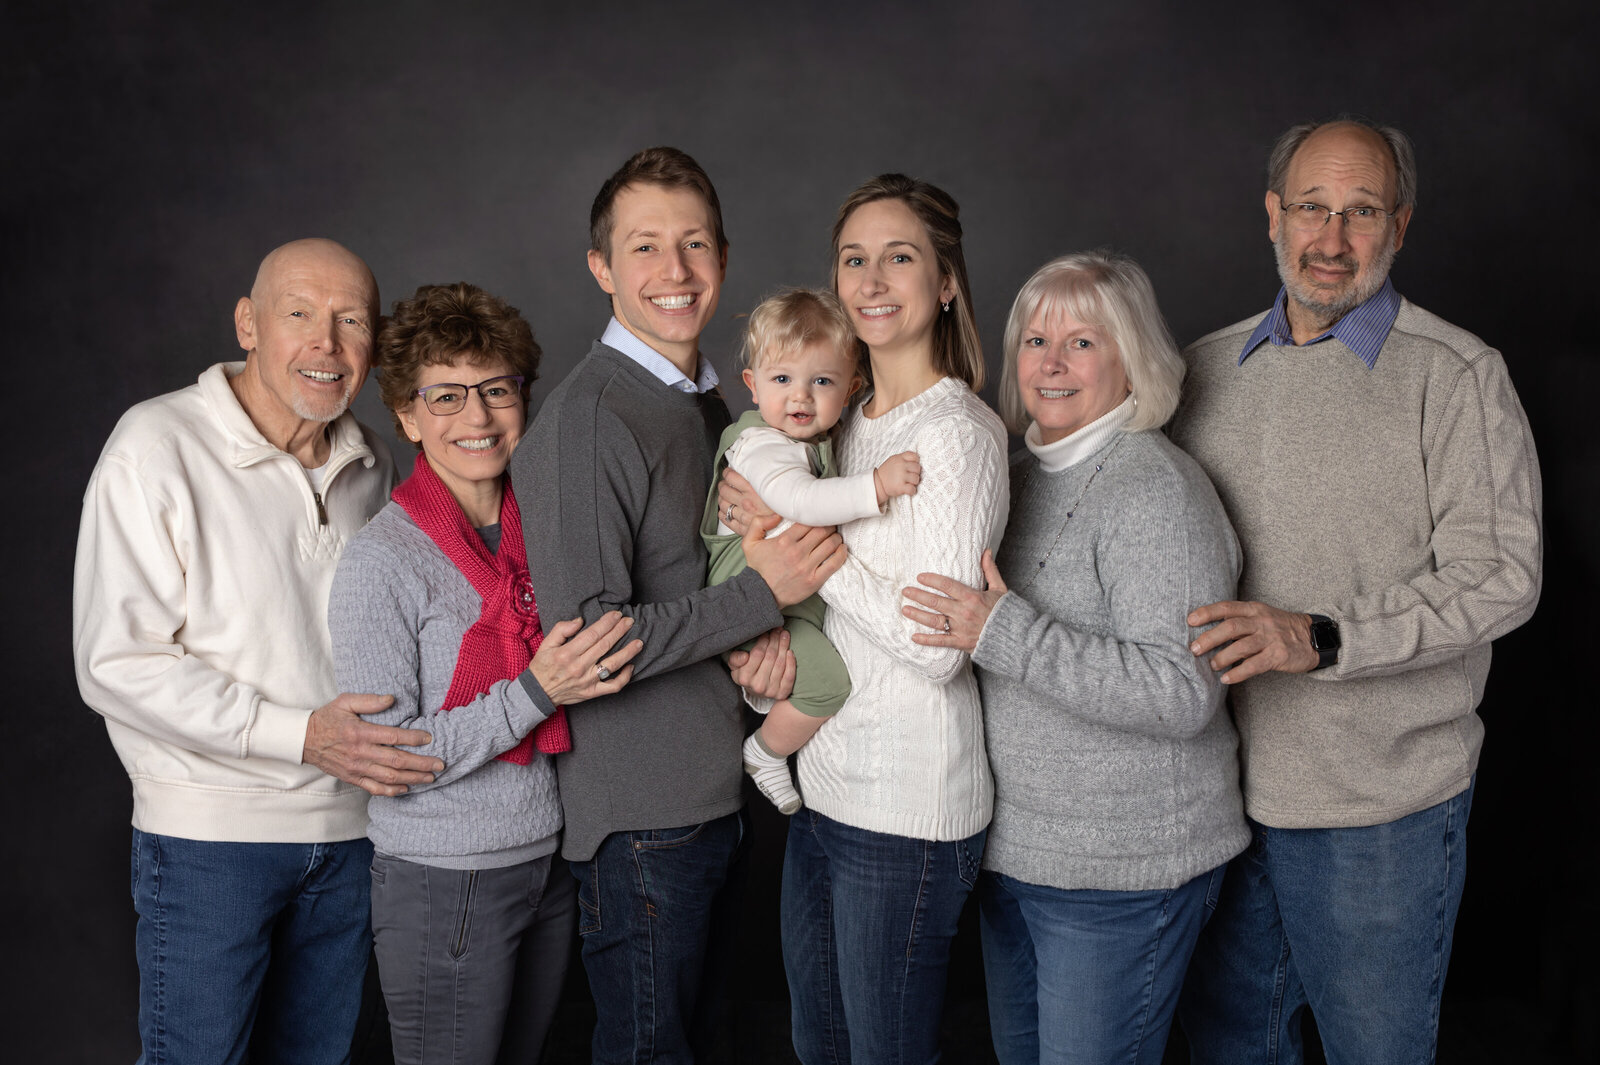 extended family studio portrait